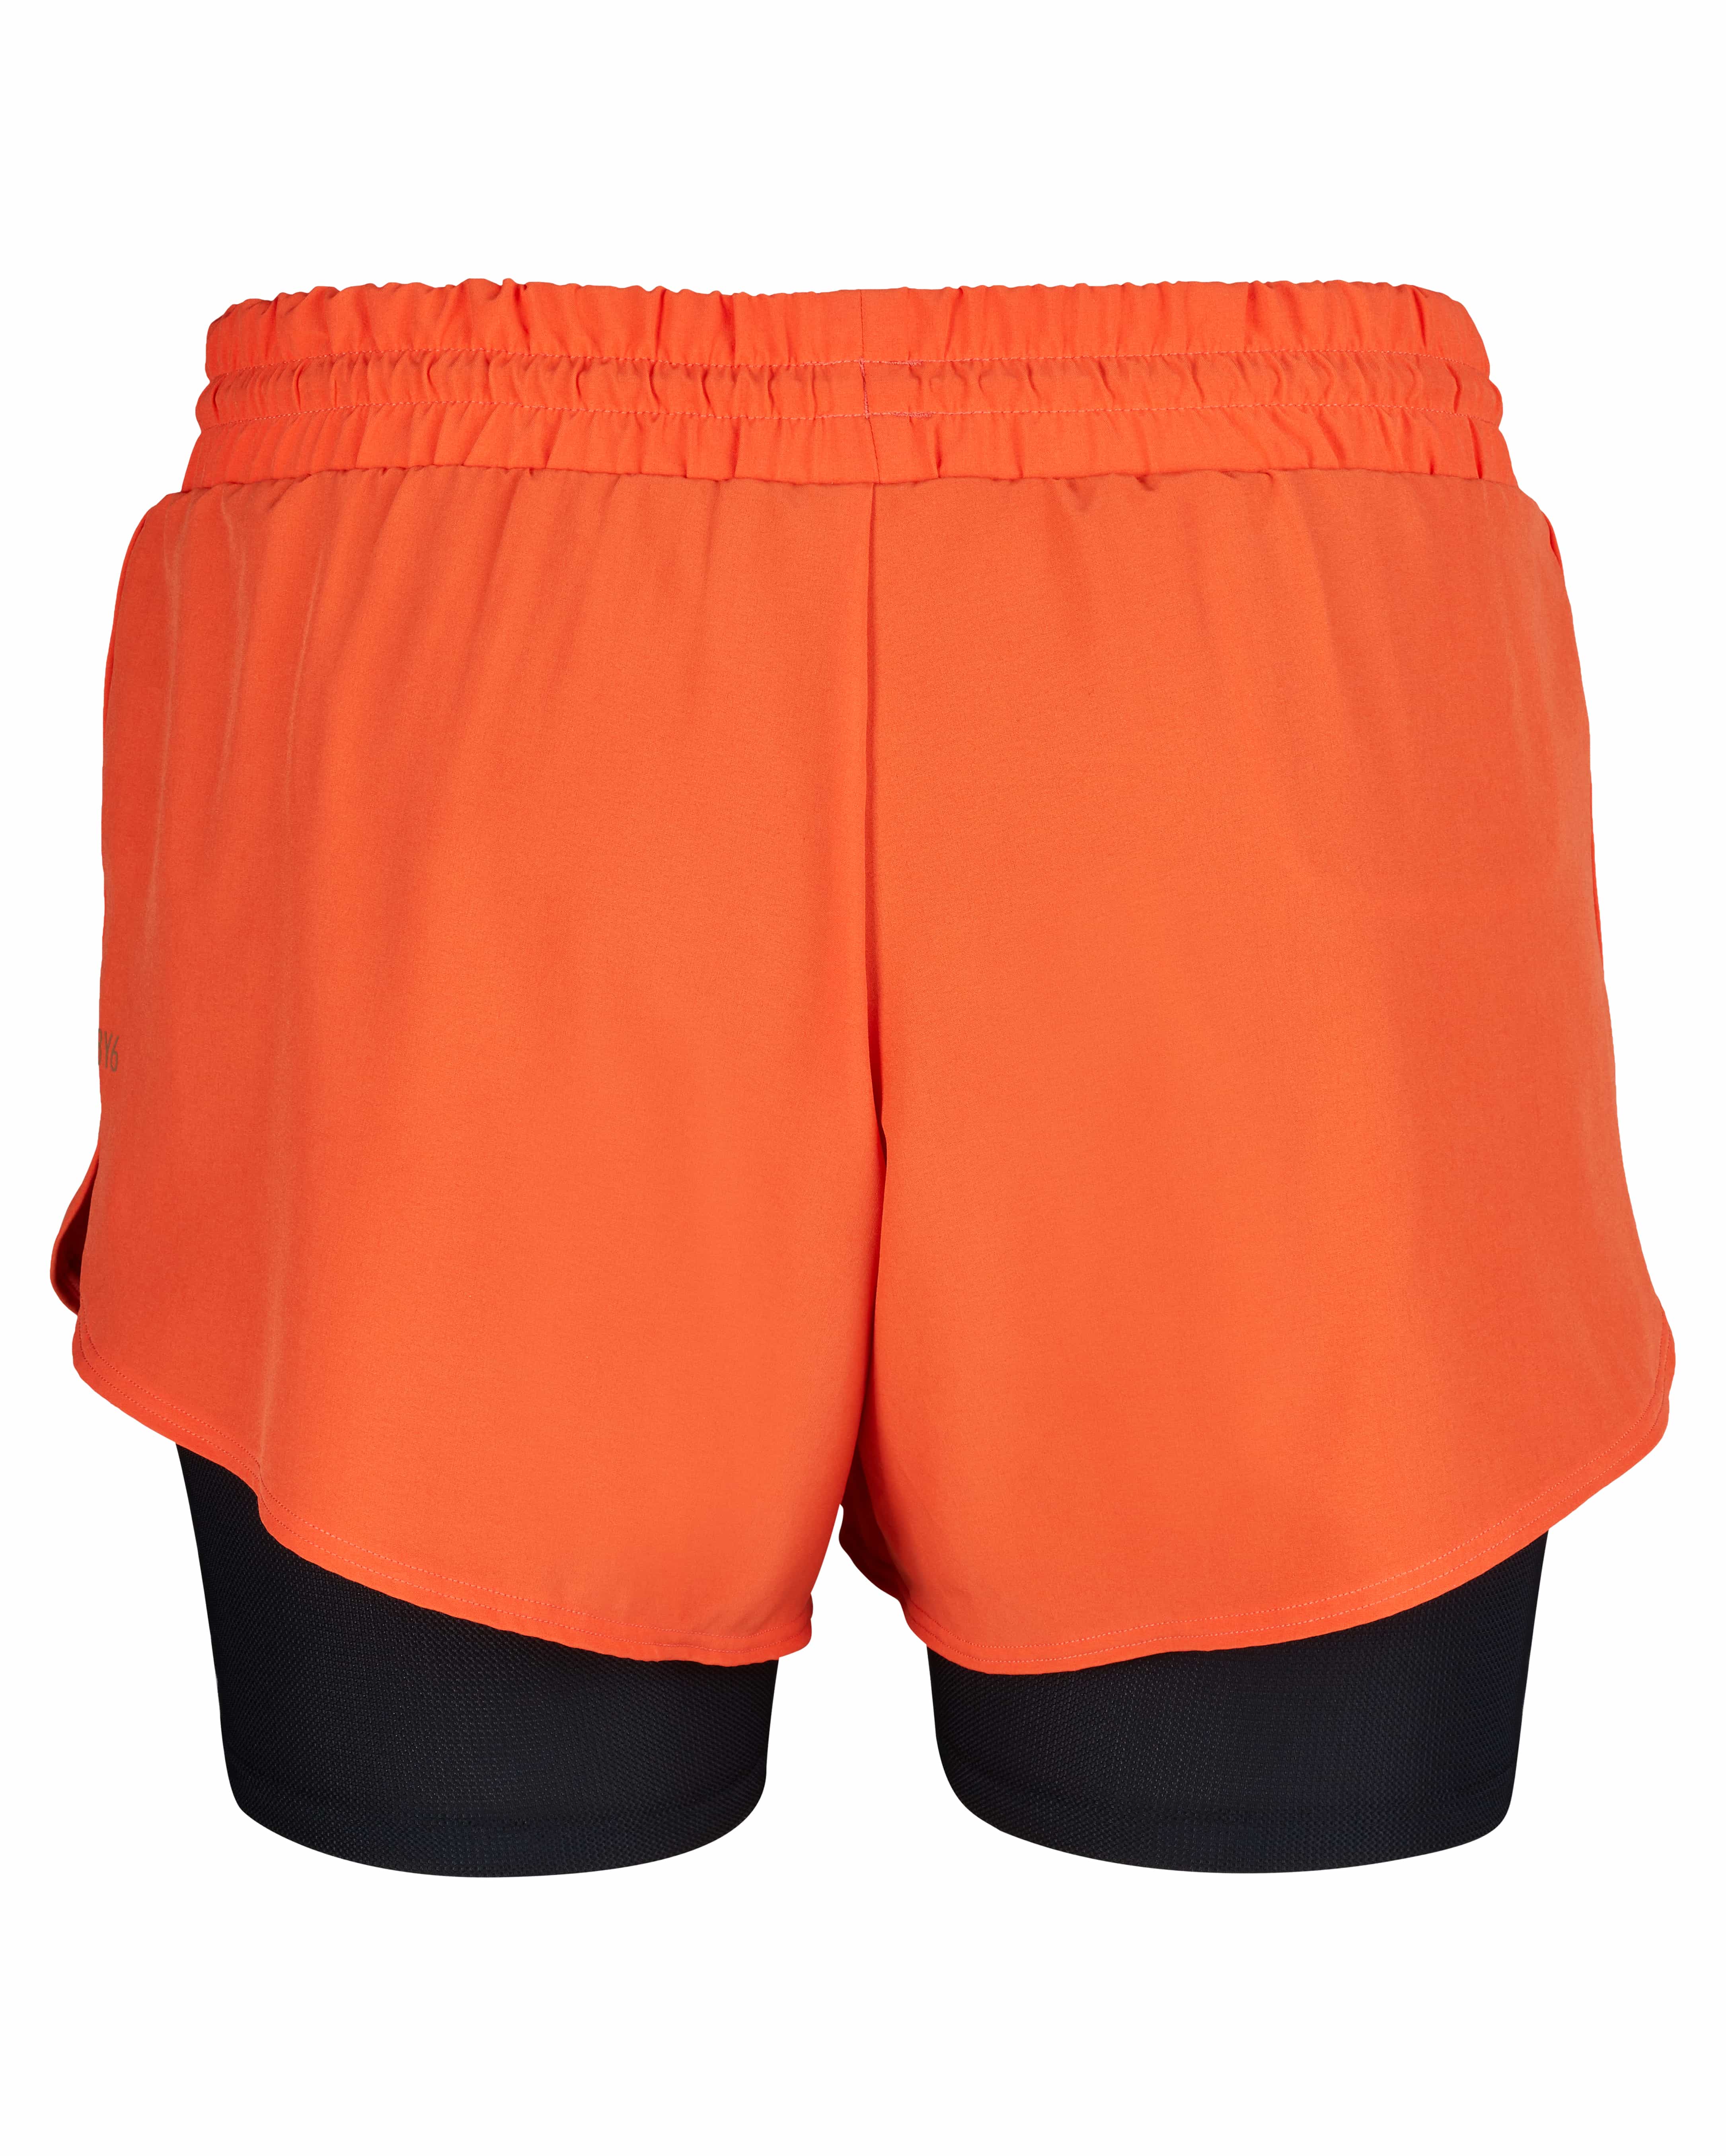 Skiny L. Shorts - Blazing Orange